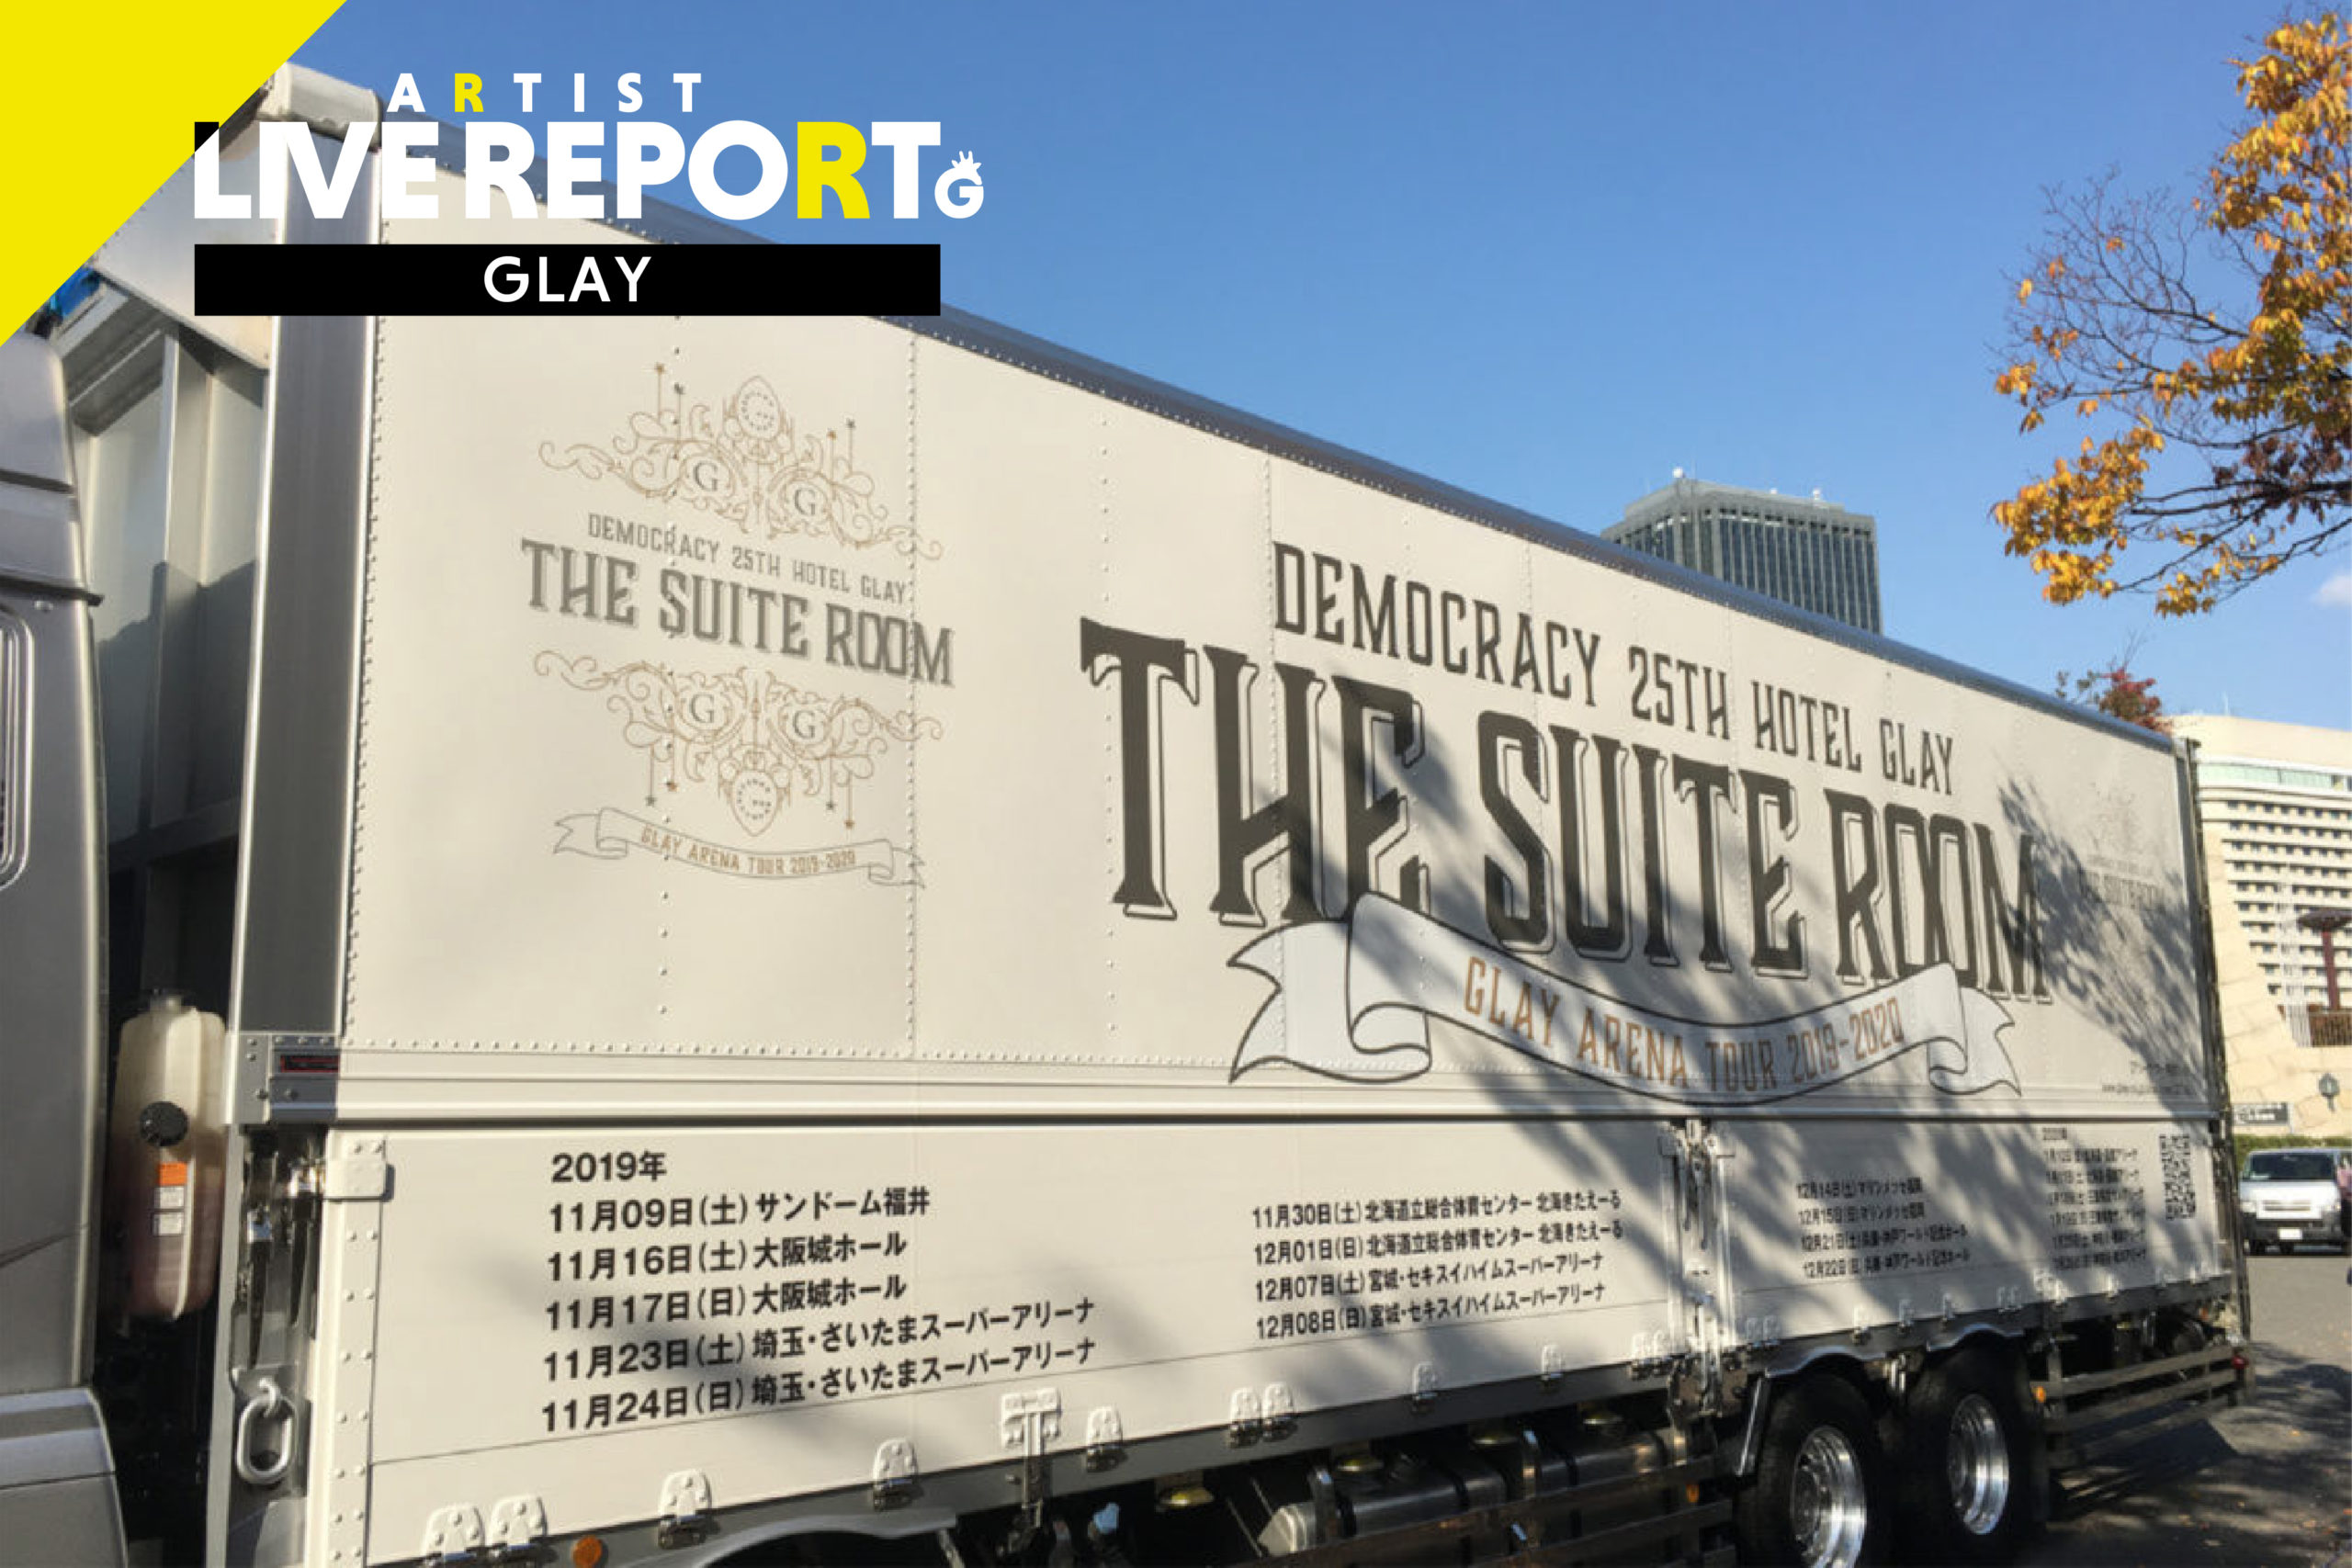 「【ライブレポート】GLAY ARENA TOUR 2019-2020 DEMOCRACY 25th “HOTEL GLAY” THE SUITE ROOM 〜2019.11.16 大阪城ホール Day1〜」のアイキャッチ画像